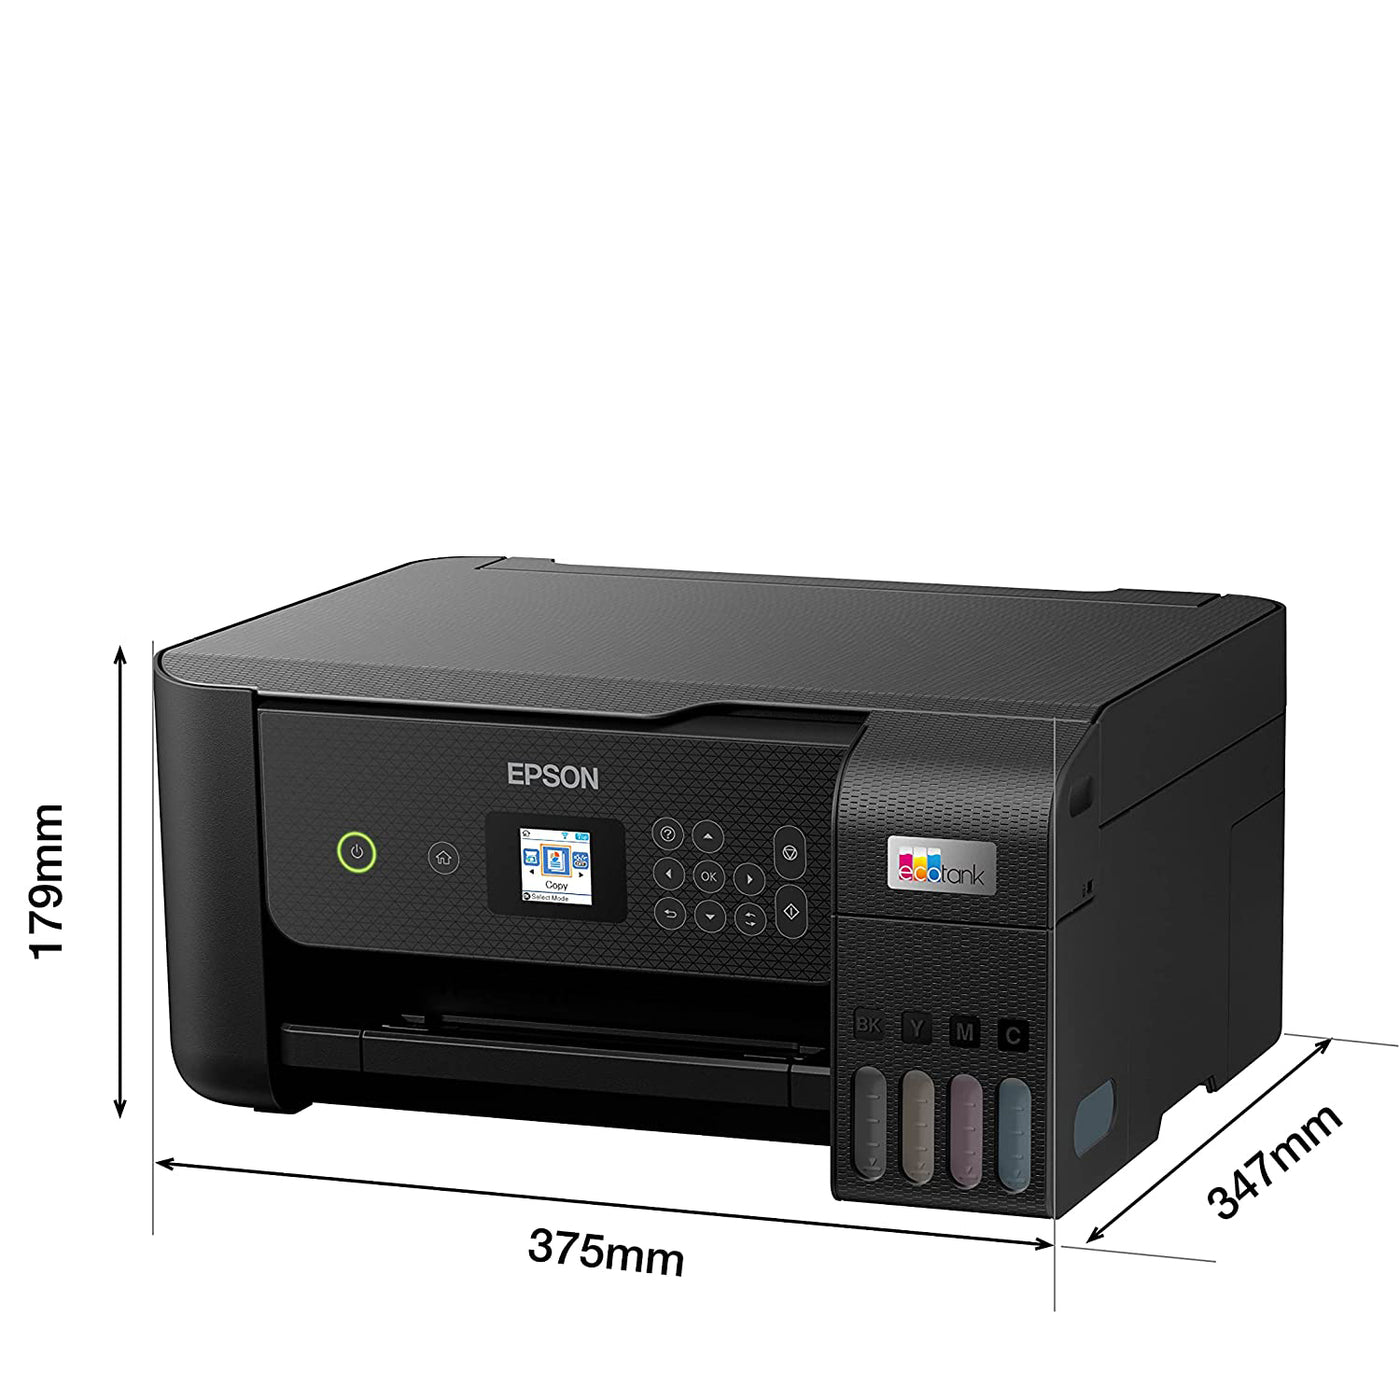 Impresora Epson EcoTank L3260 Multifuncional Usb 2.0 WiFi